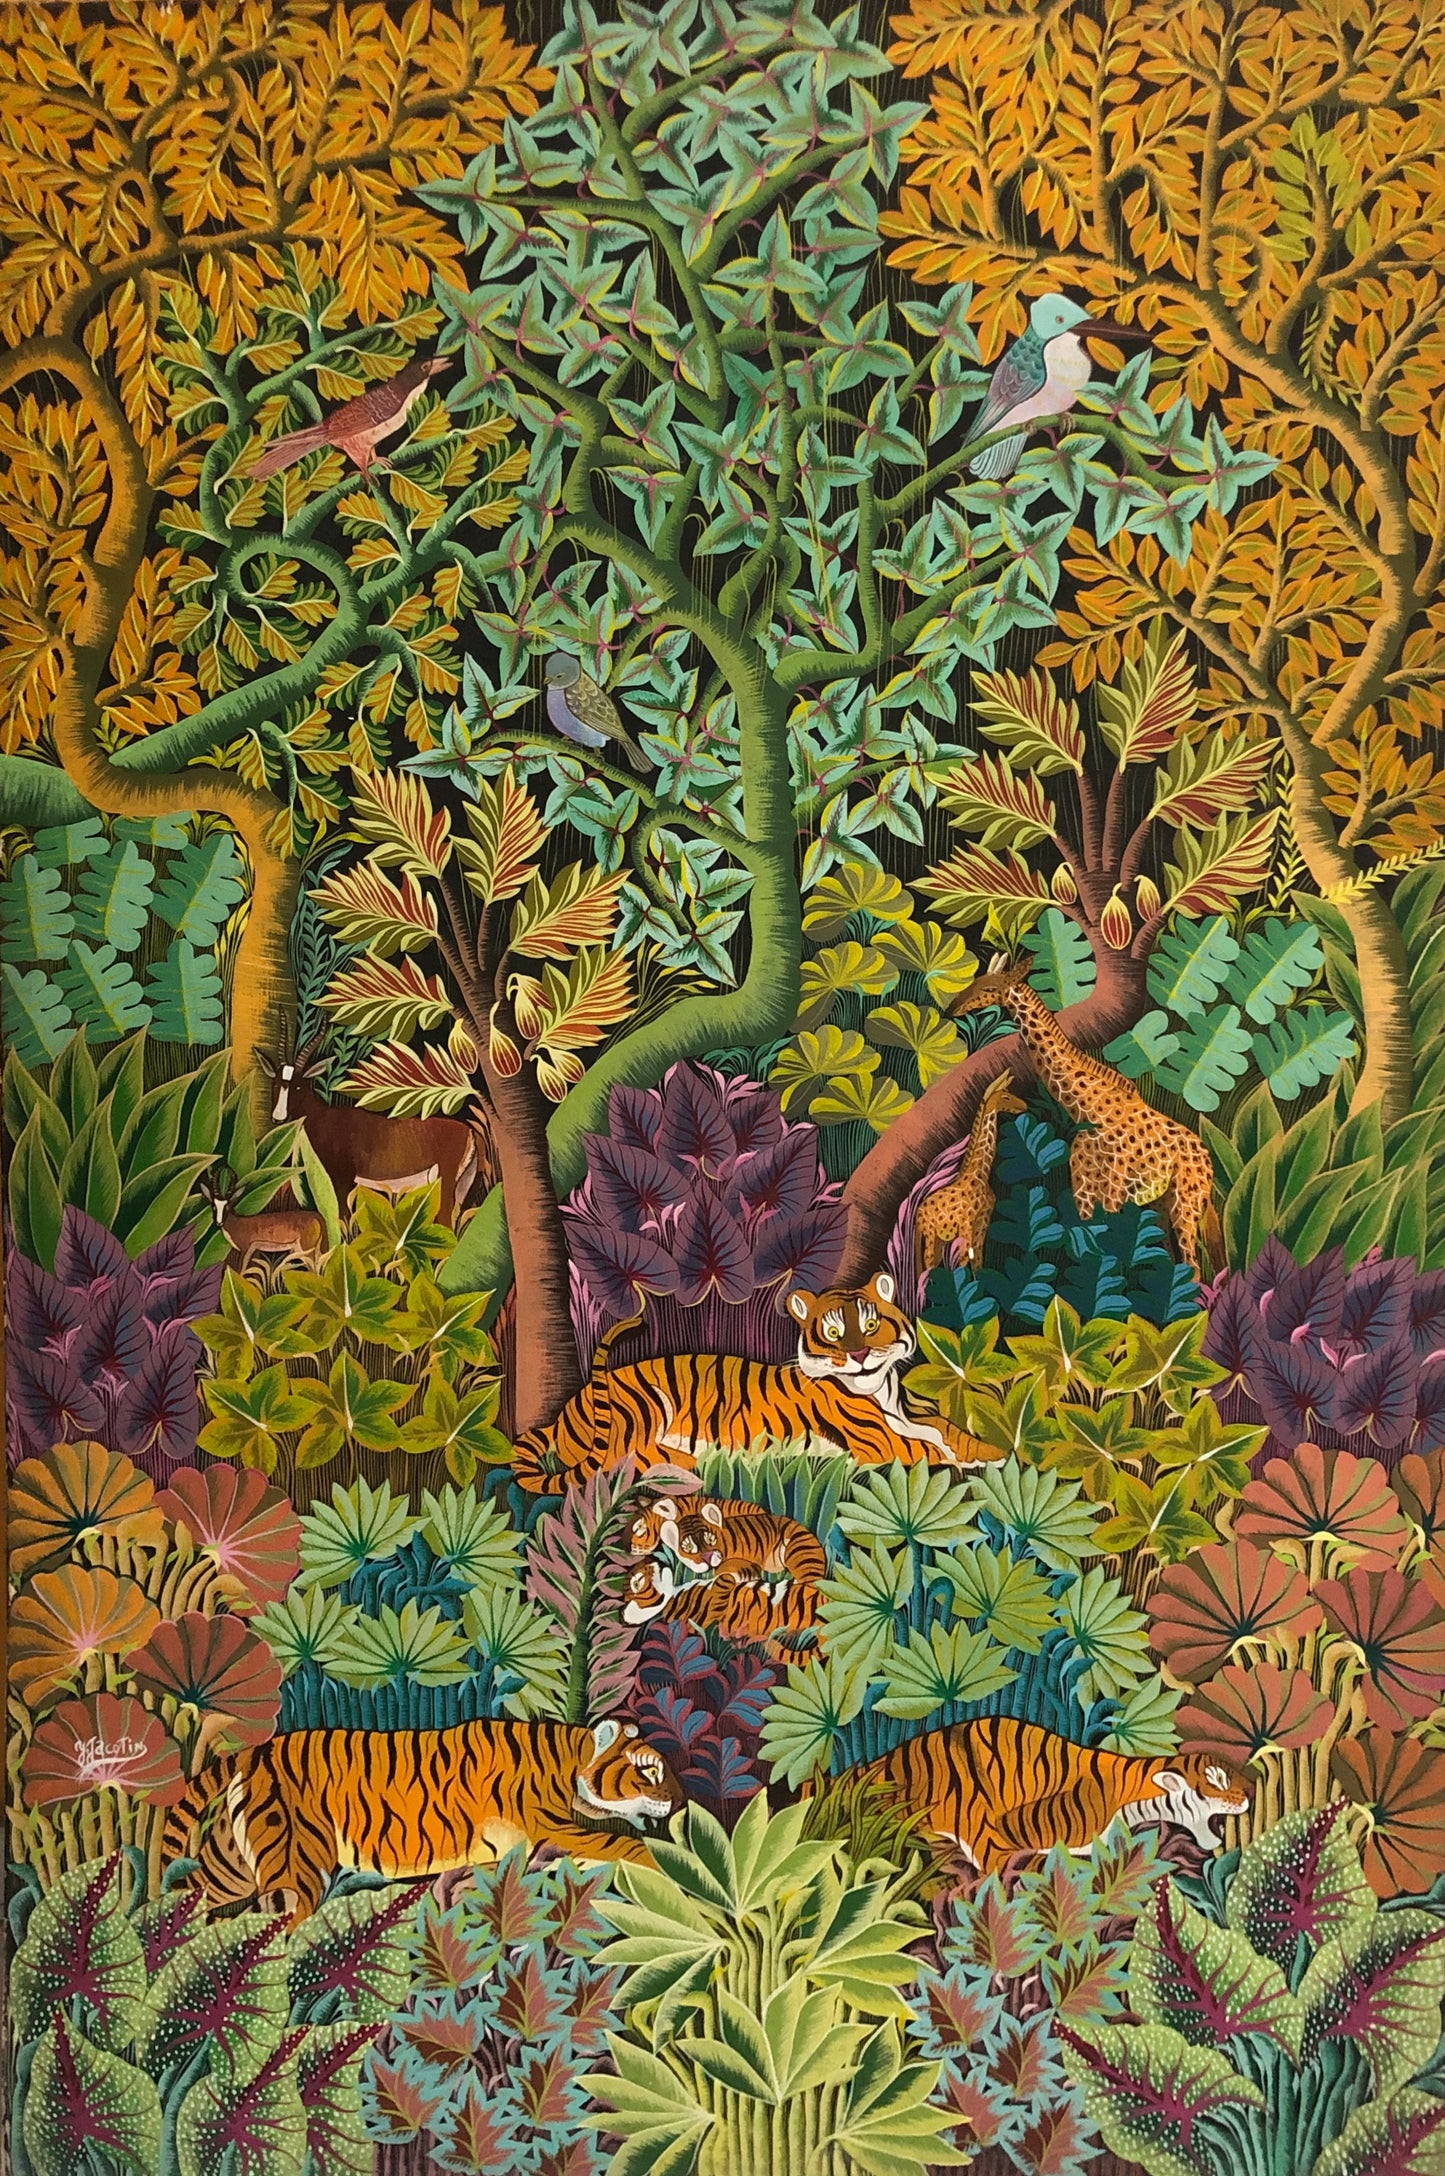 Yves Jacotin 48"x36" Tigres dans une jungle huile sur toile #3-4-90GN-HA